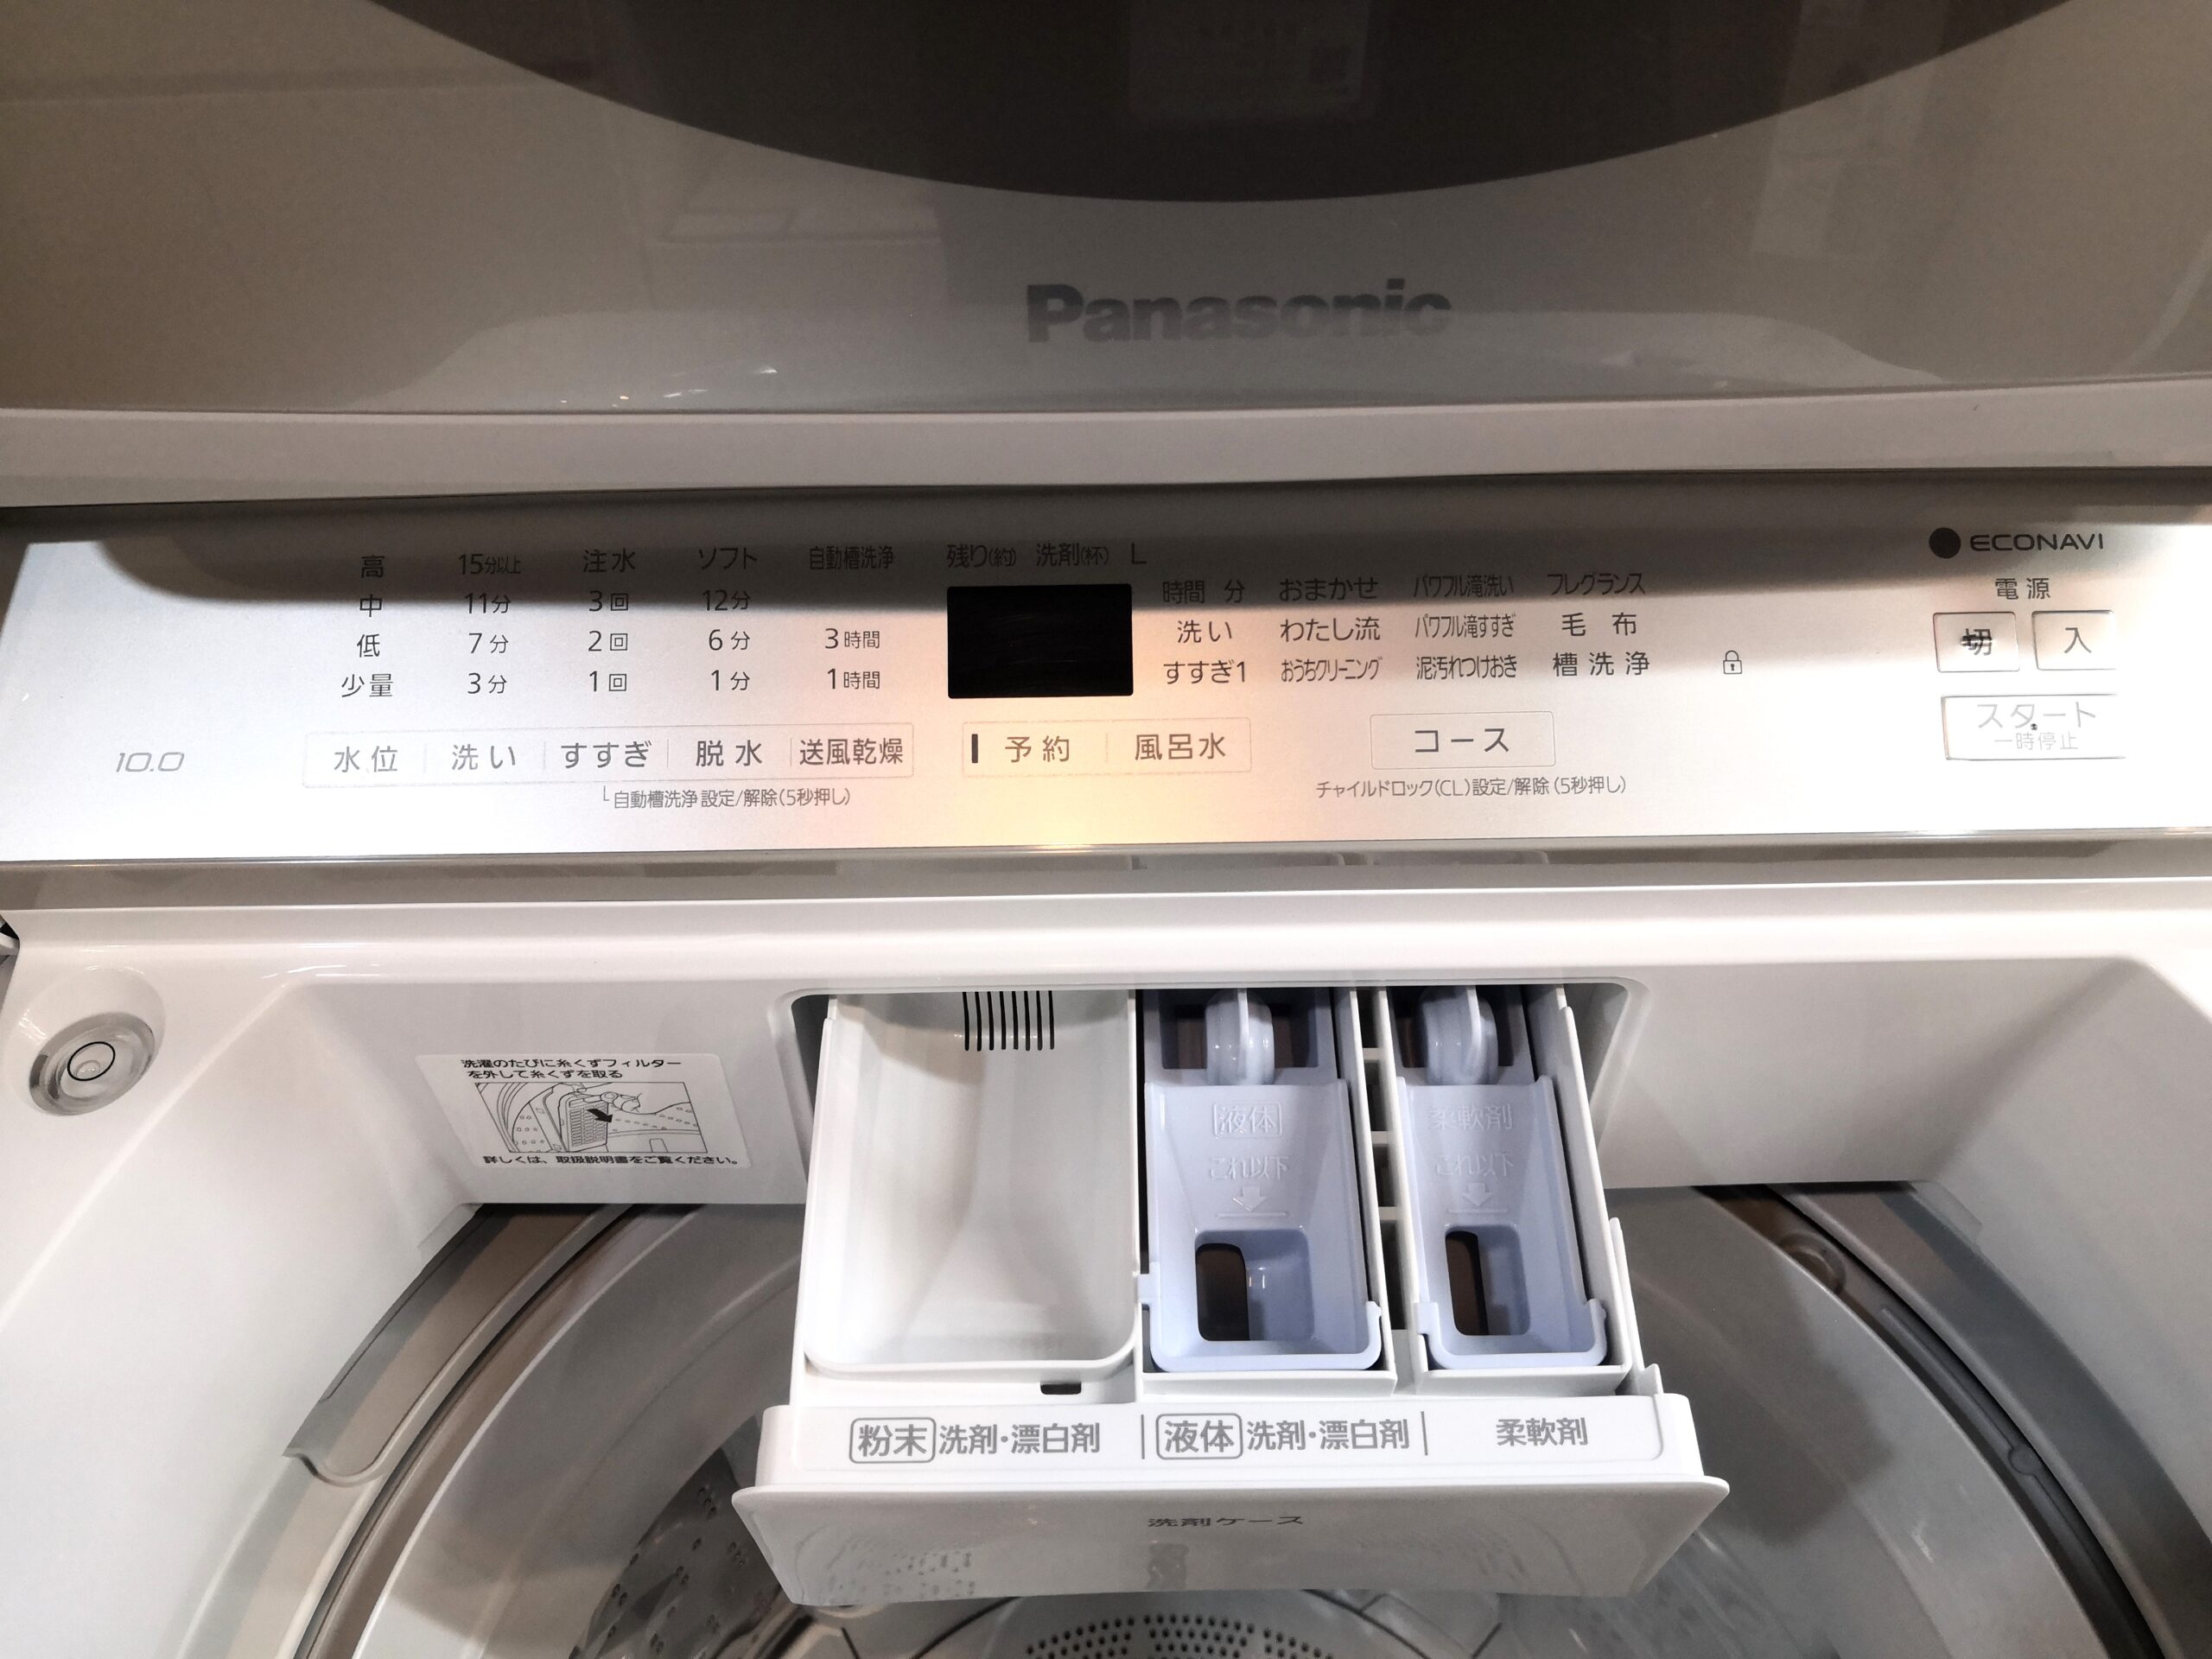 中古】パナソニック Panasonic NA-FA100H7-N 2020年製 全自動洗濯機